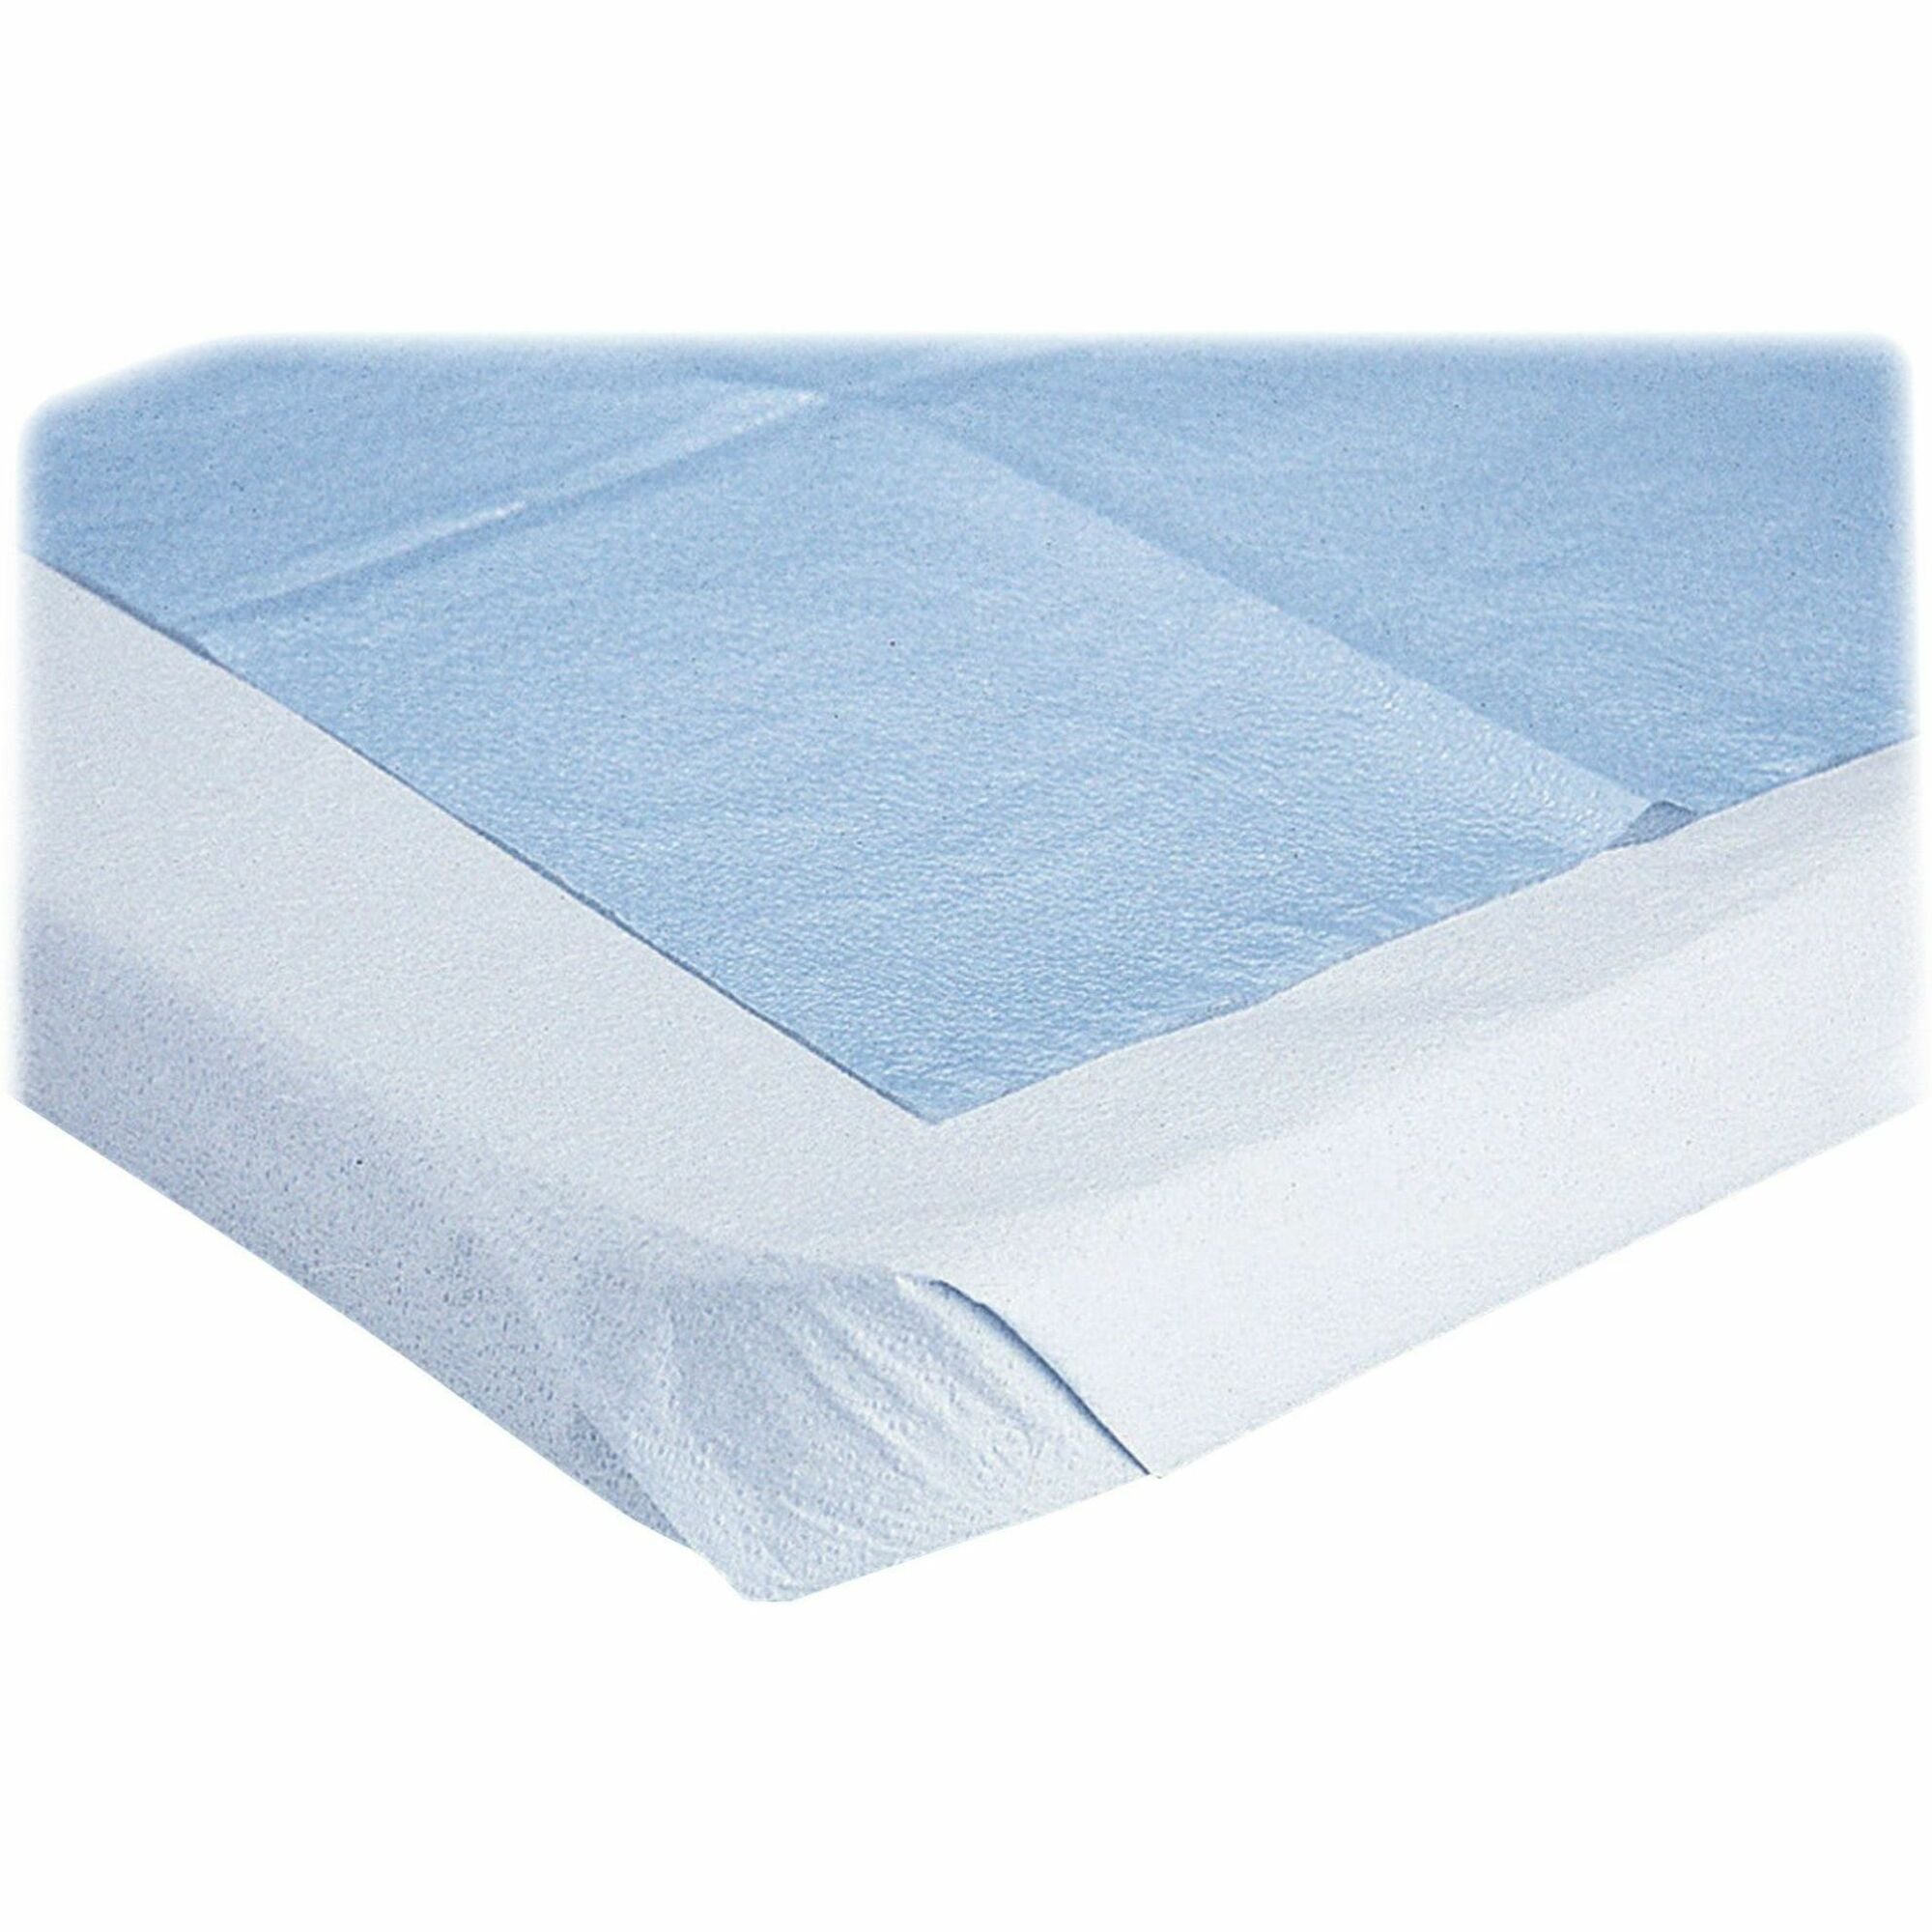 Medline Disposable 2-Ply Drape Sheets - Tissue - For Medical - White - 50 / Box - 